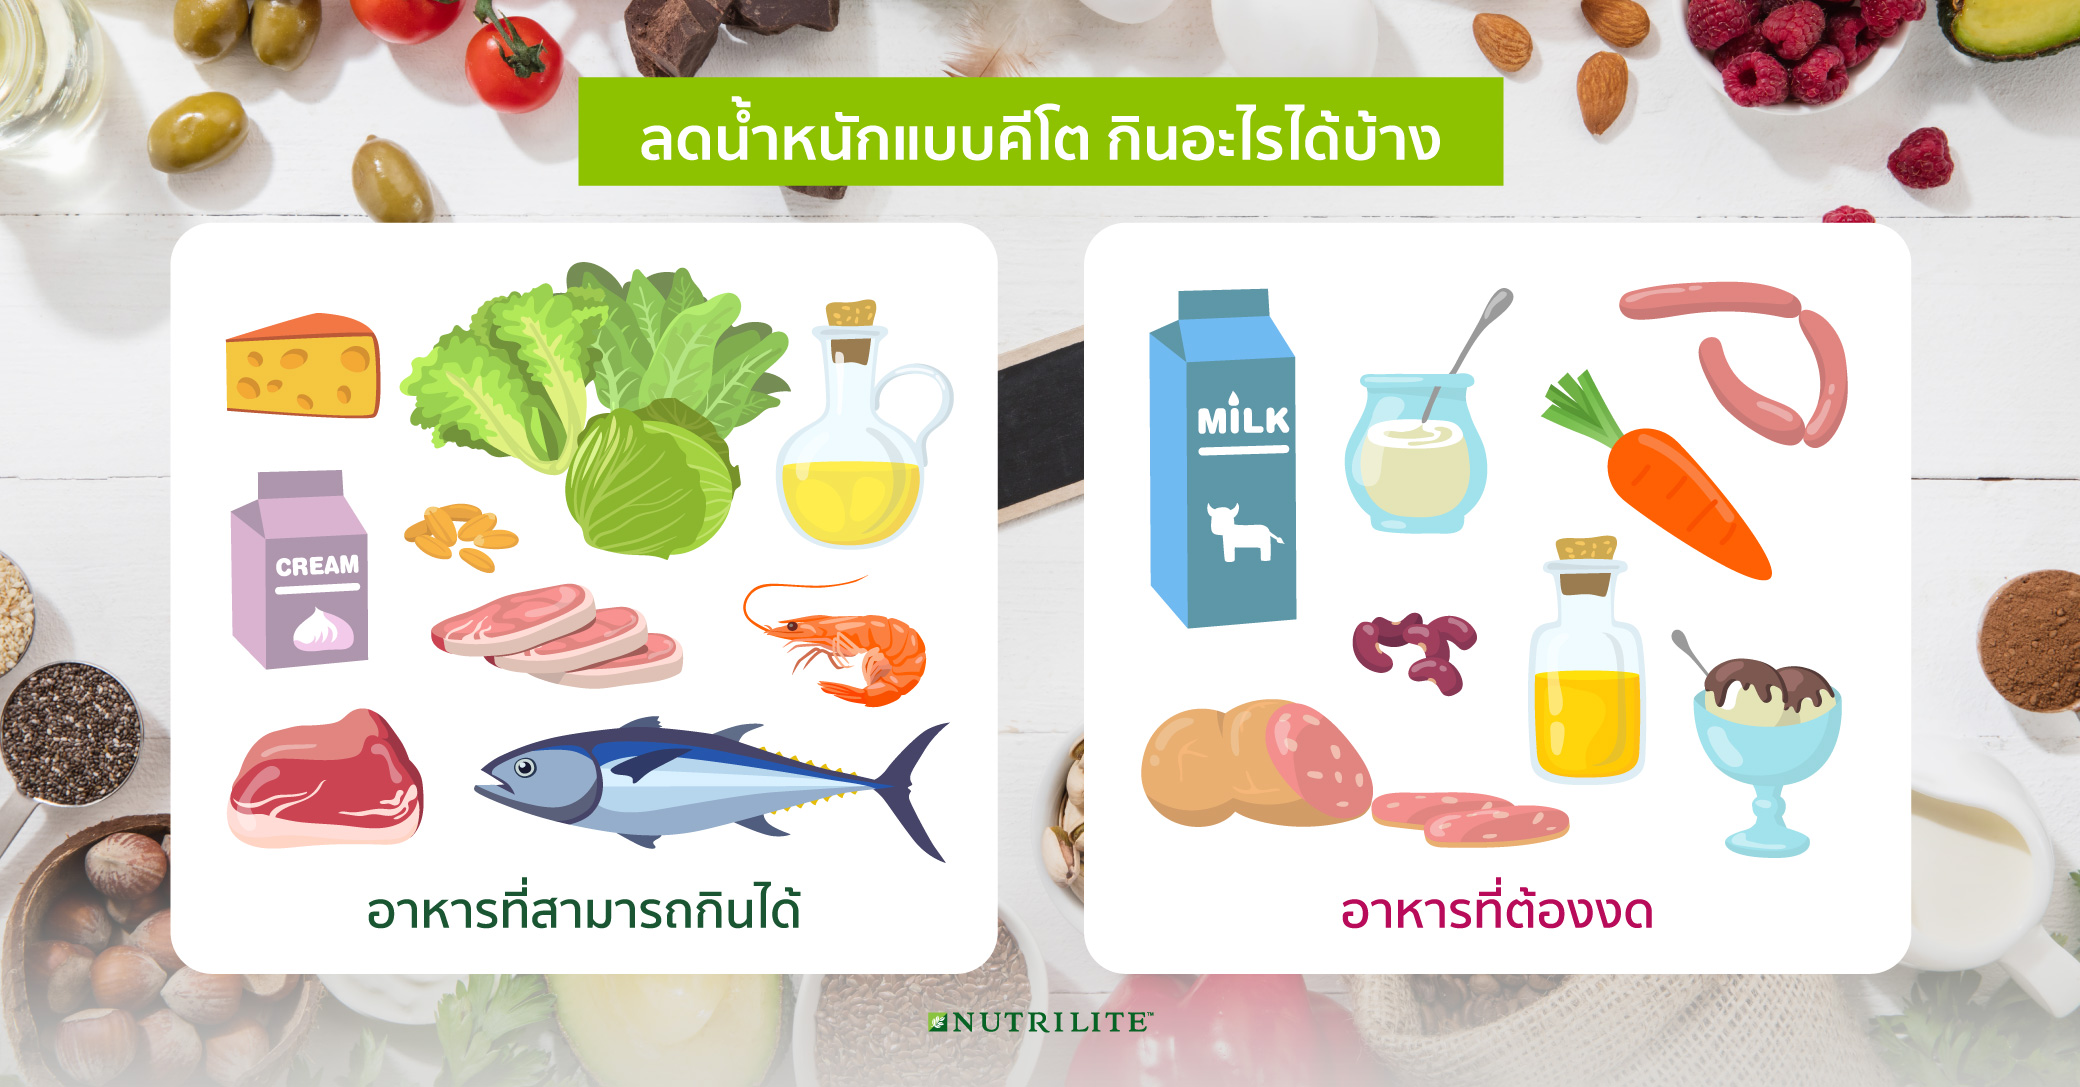 การลดน้ำหนักแบบคีโต คืออะไร อันตรายต่อสุขภาพหรือไม่ | Nutrilite™ Thailand